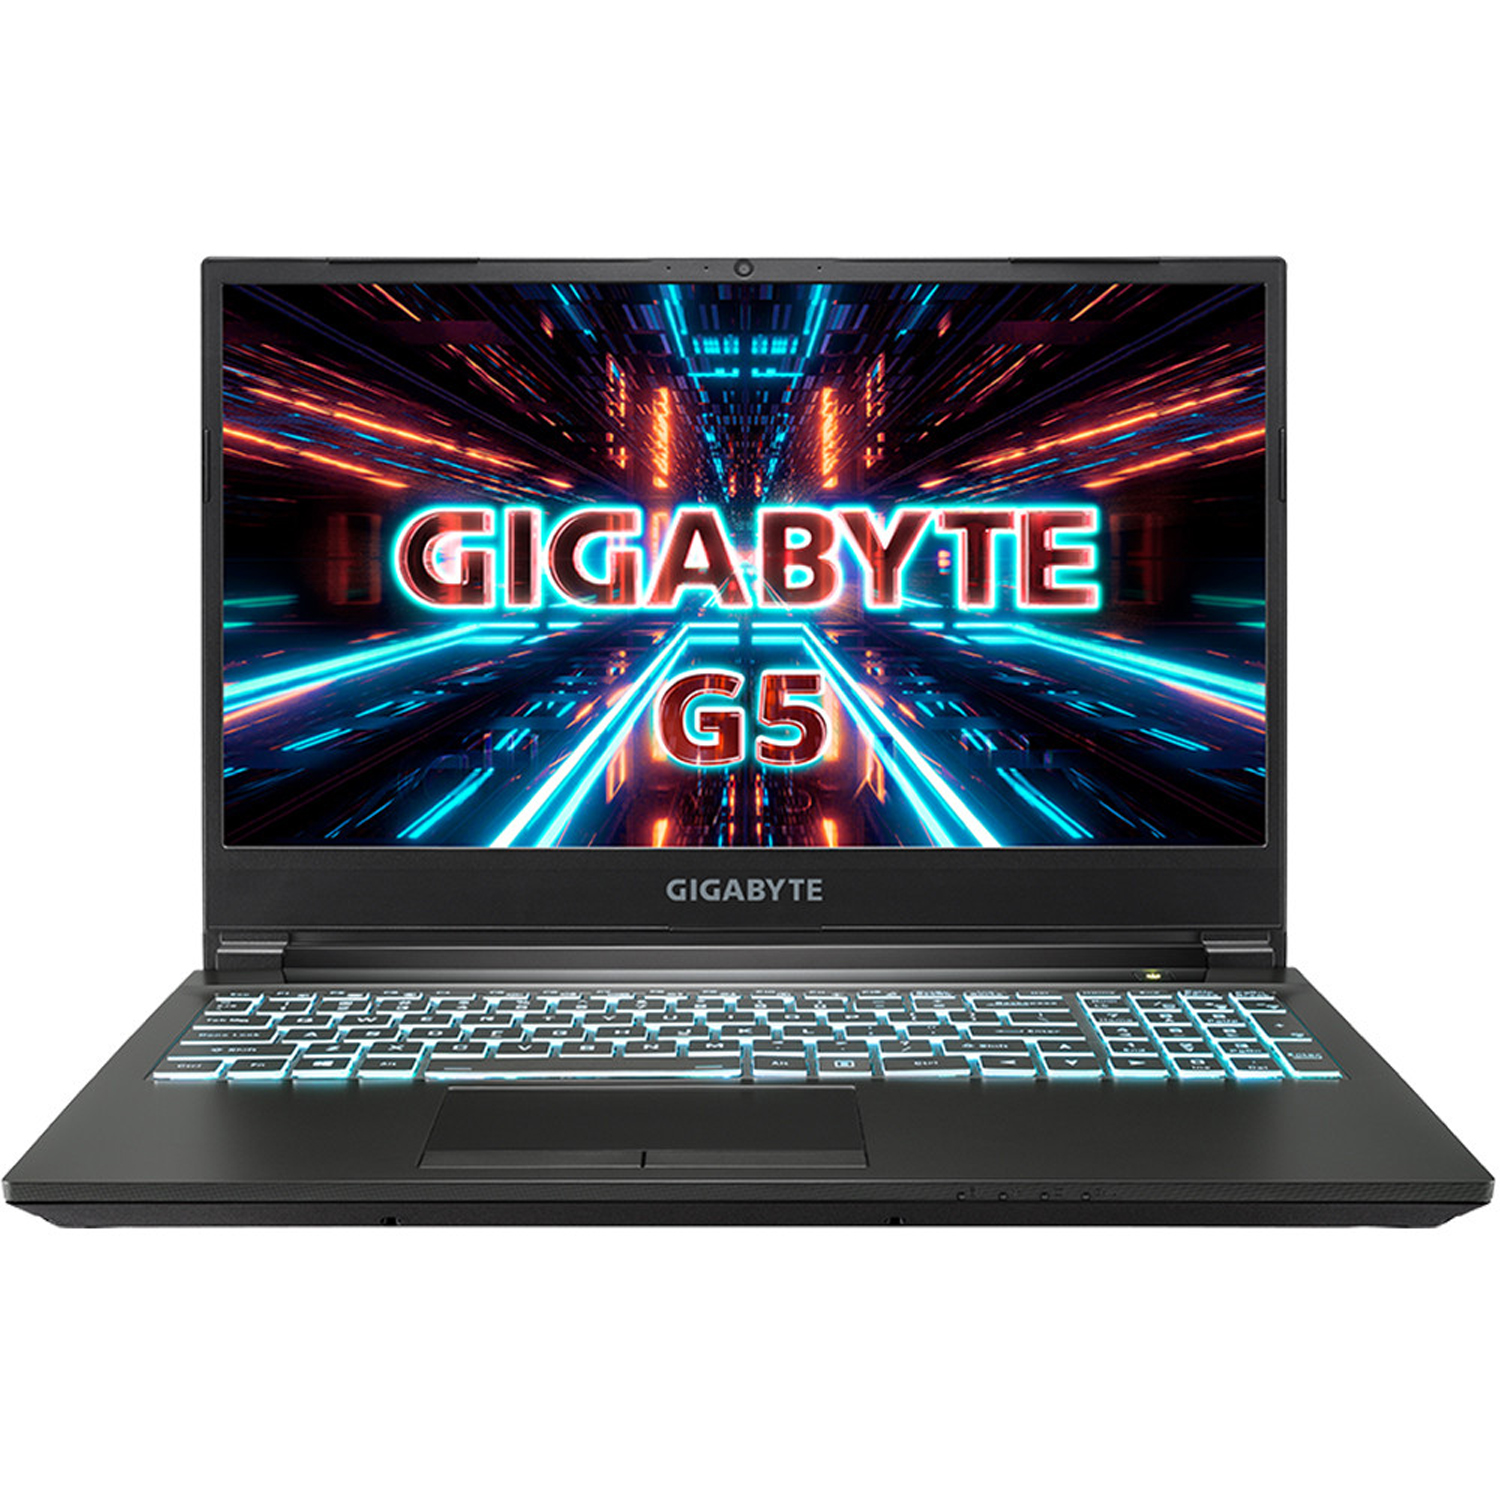 Gigabyte g5 kc. Ноутбук Gigabyte g5 ge. Ноутбук игровой Gigabyte g5 KD-52ee123sd. Ноутбук Gigabyte i1520m.